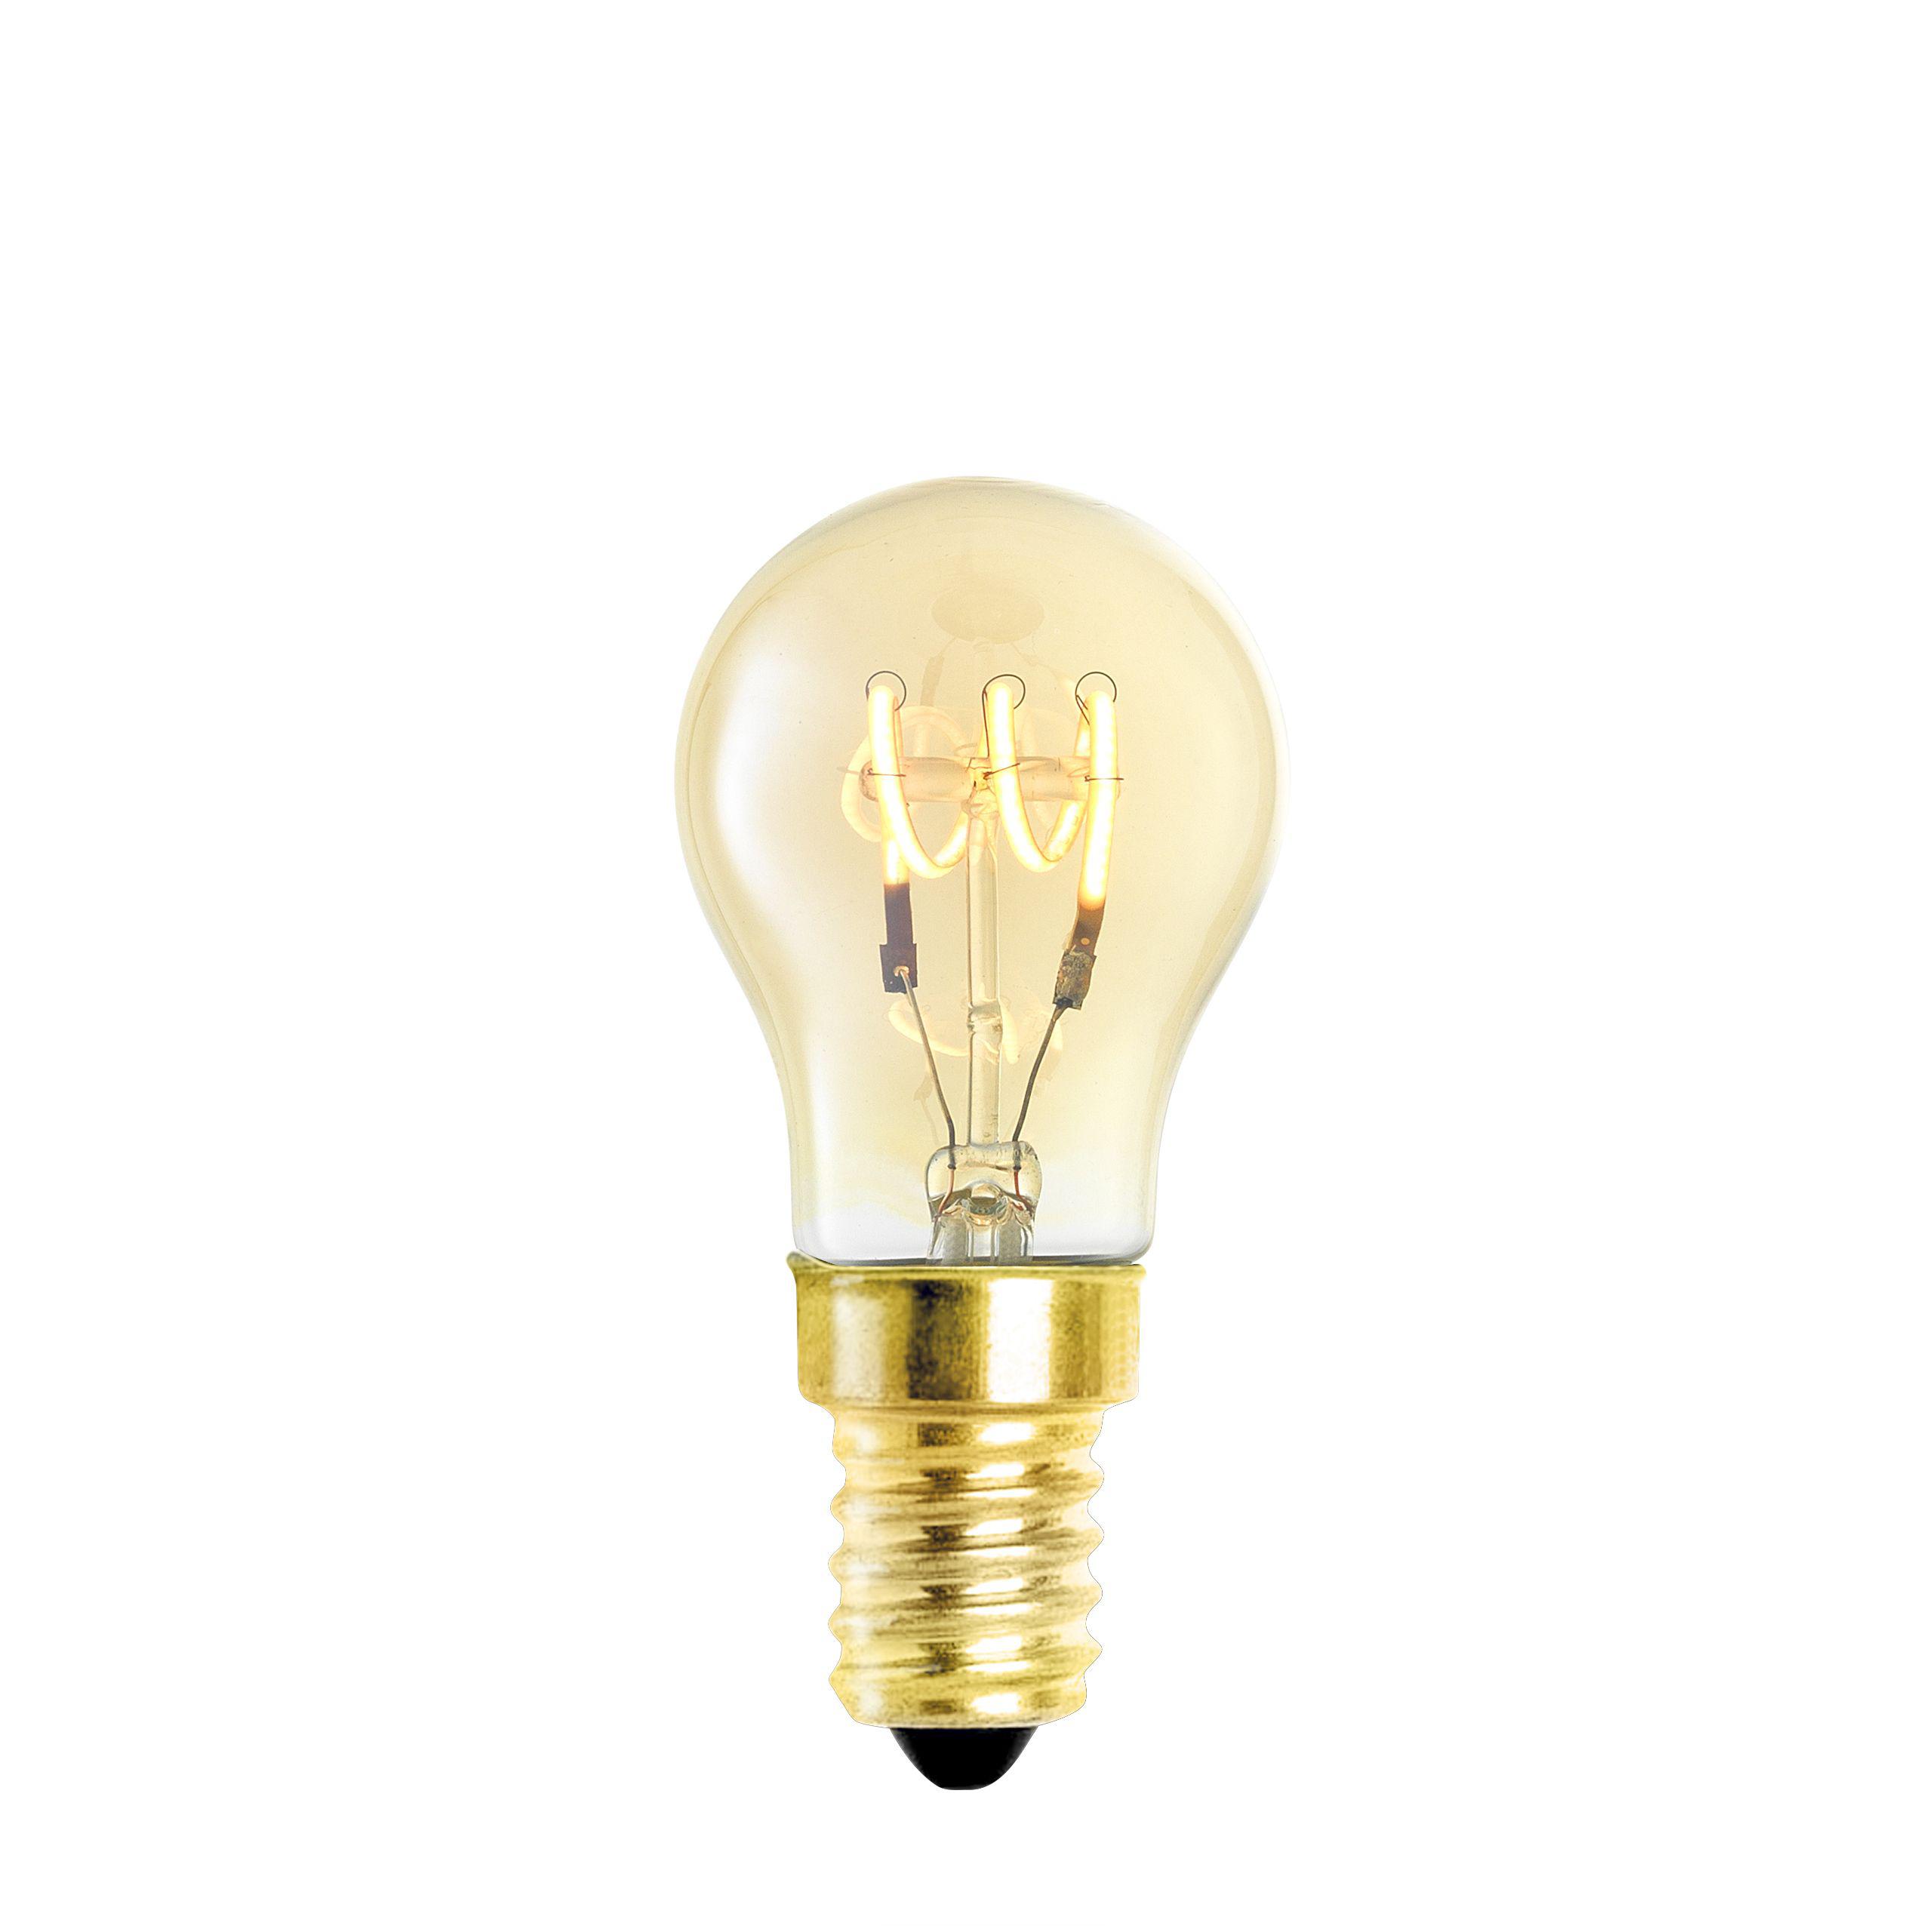 Купить Лампочка LED Bulb A Shape 4W E14 set of 4 в интернет-магазине roooms.ru